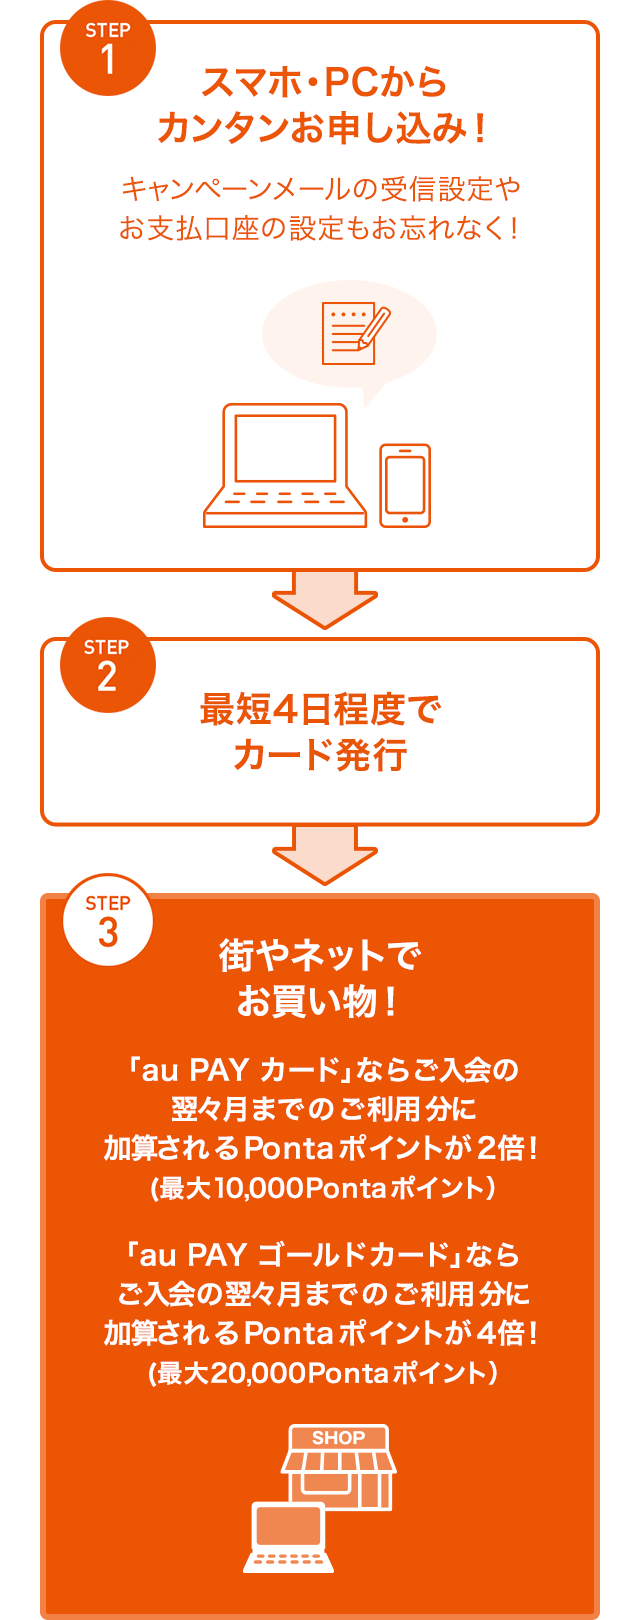 Au Pay カード新規入会 利用でポイントプレゼント